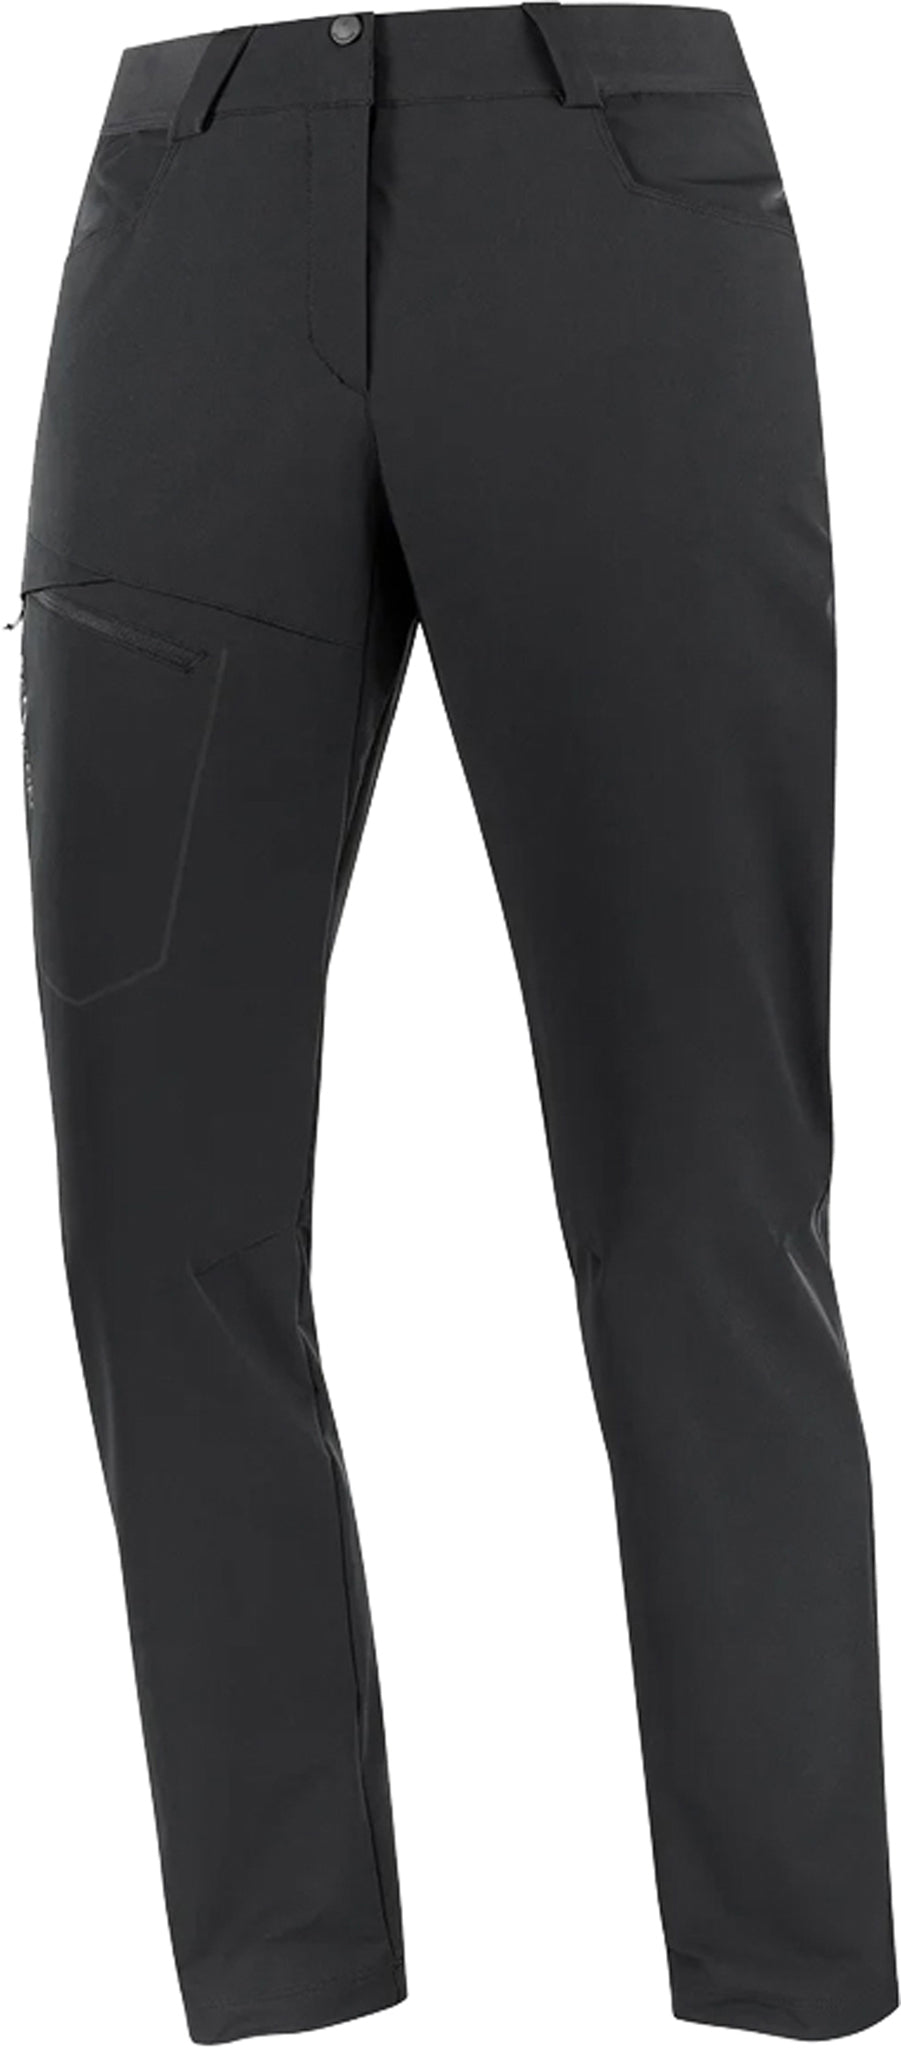 LLTT Fitness Female Polyester Ankle-Length Breathable Pants Women